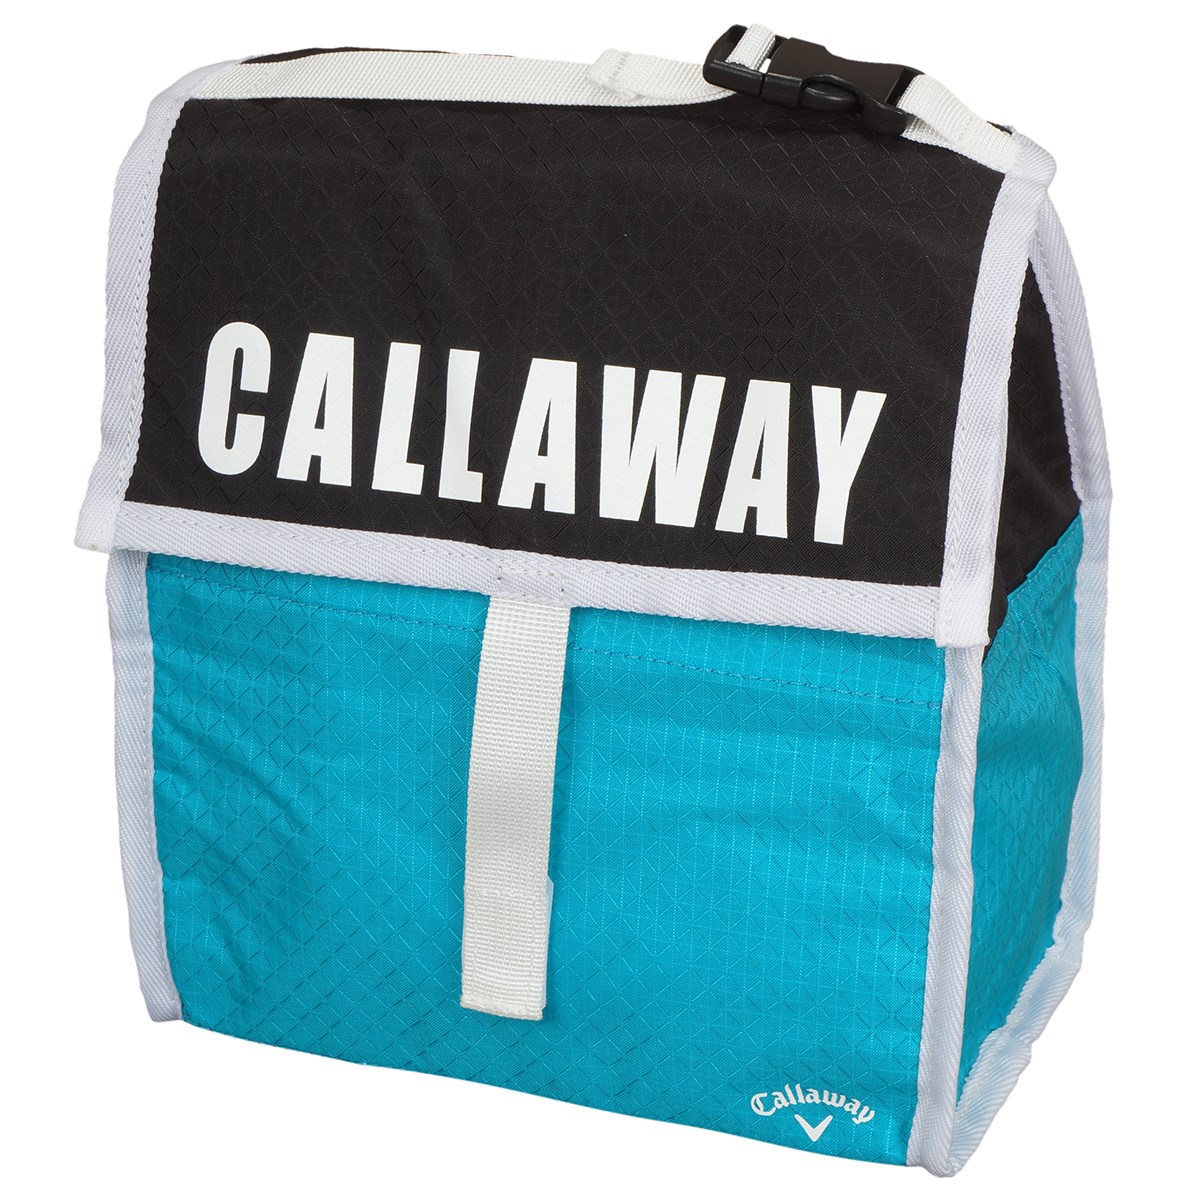 キャロウェイゴルフ(Callaway Golf) クーラーカートバッグ 